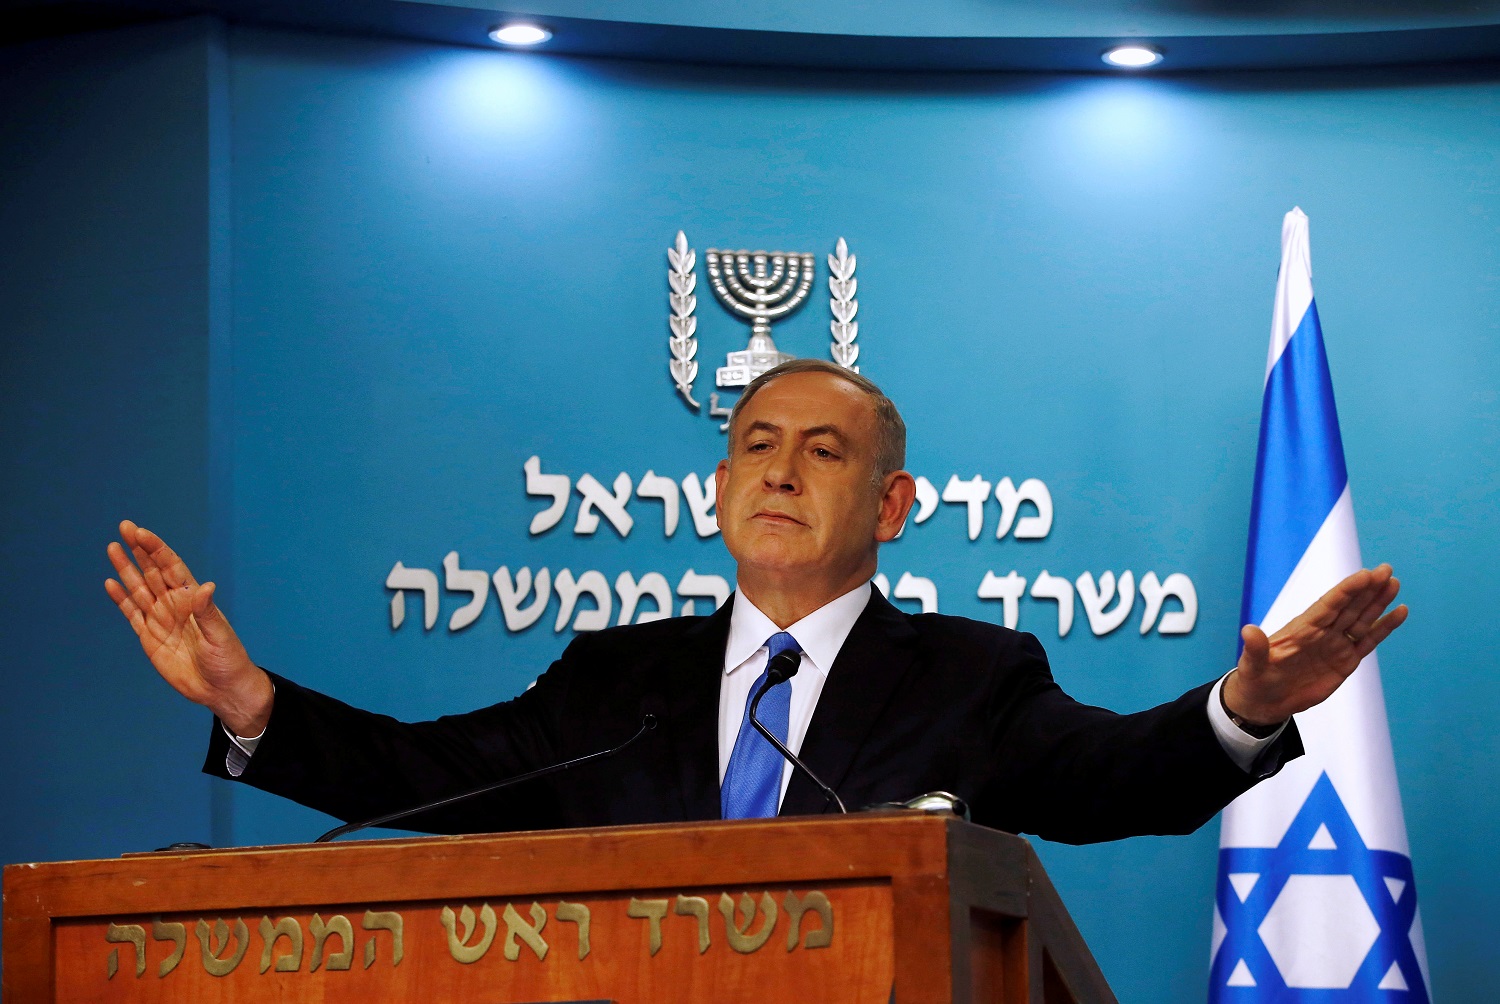 La policía israelí interroga a Netanyahu como sospechoso de un caso de corrupción